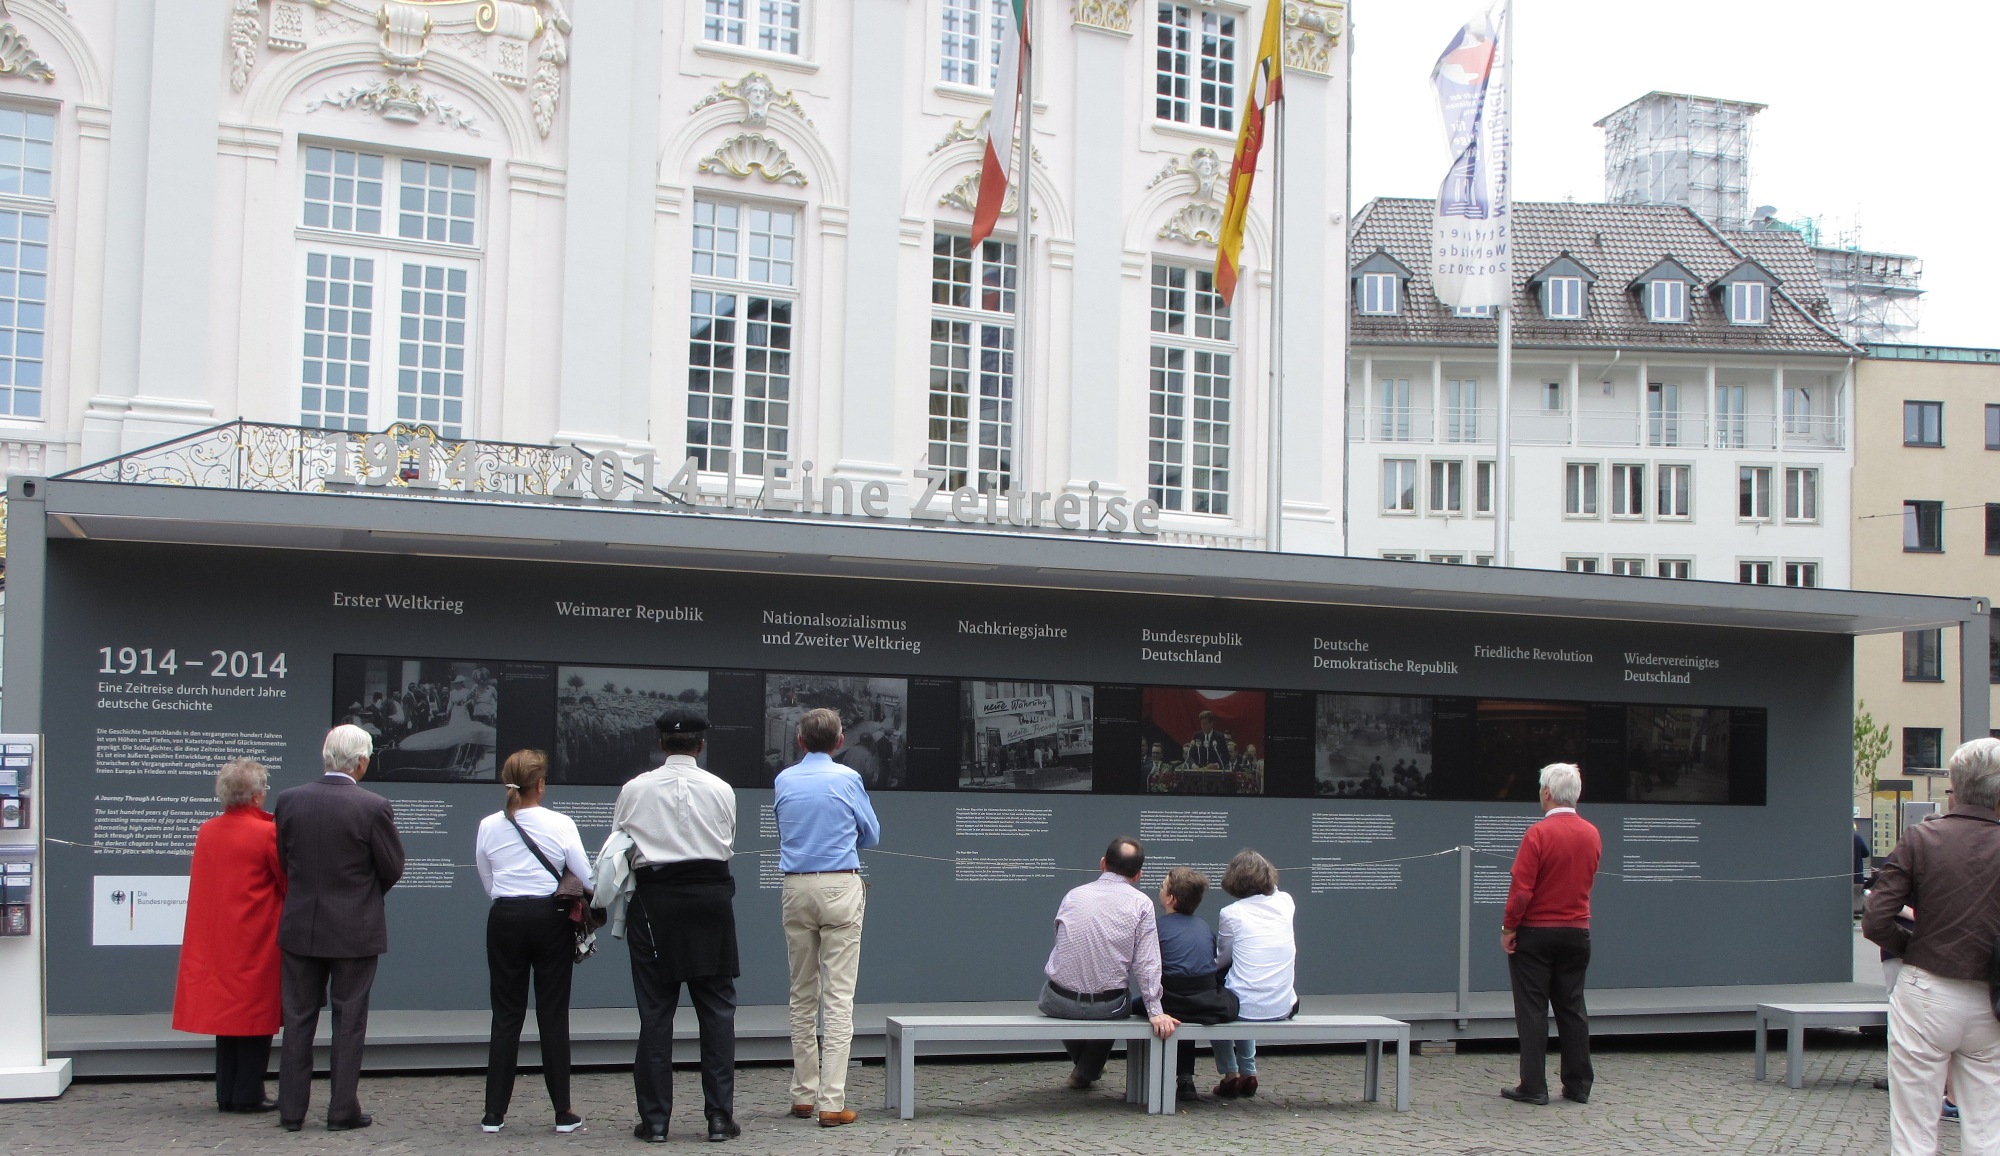 Időutazás a német történelem 100 évéből. Szabadtéri kiállítás-szerűség videókkal a régi városháza előtt, az I. Világháborútól egészen Németország újraegyesítéséig.